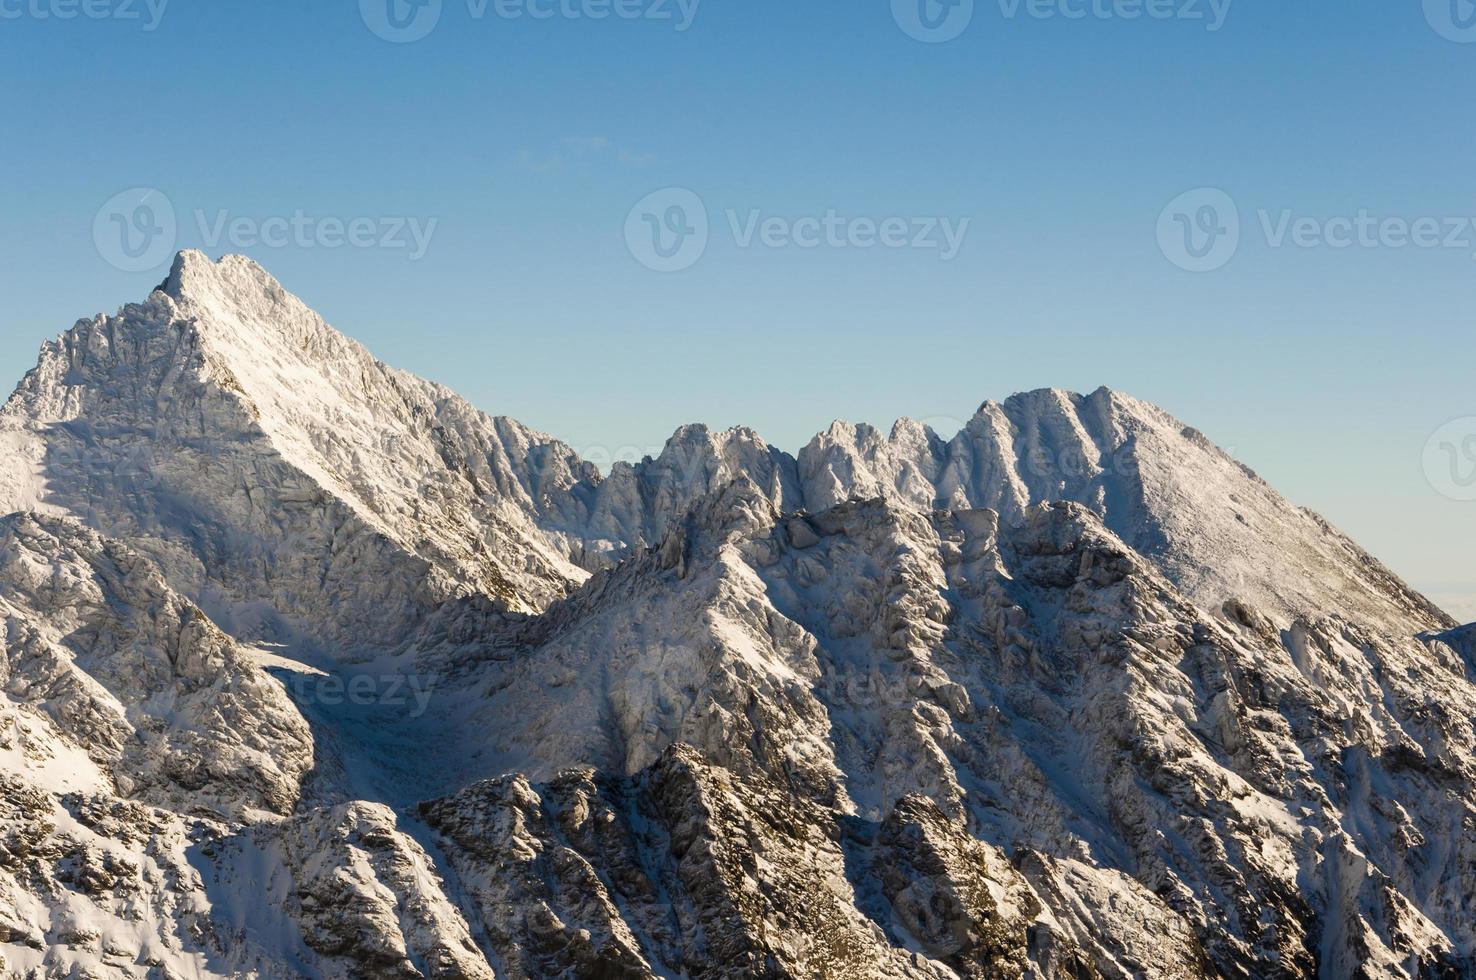 witte toppen op de bergkam in de bergen hoog foto